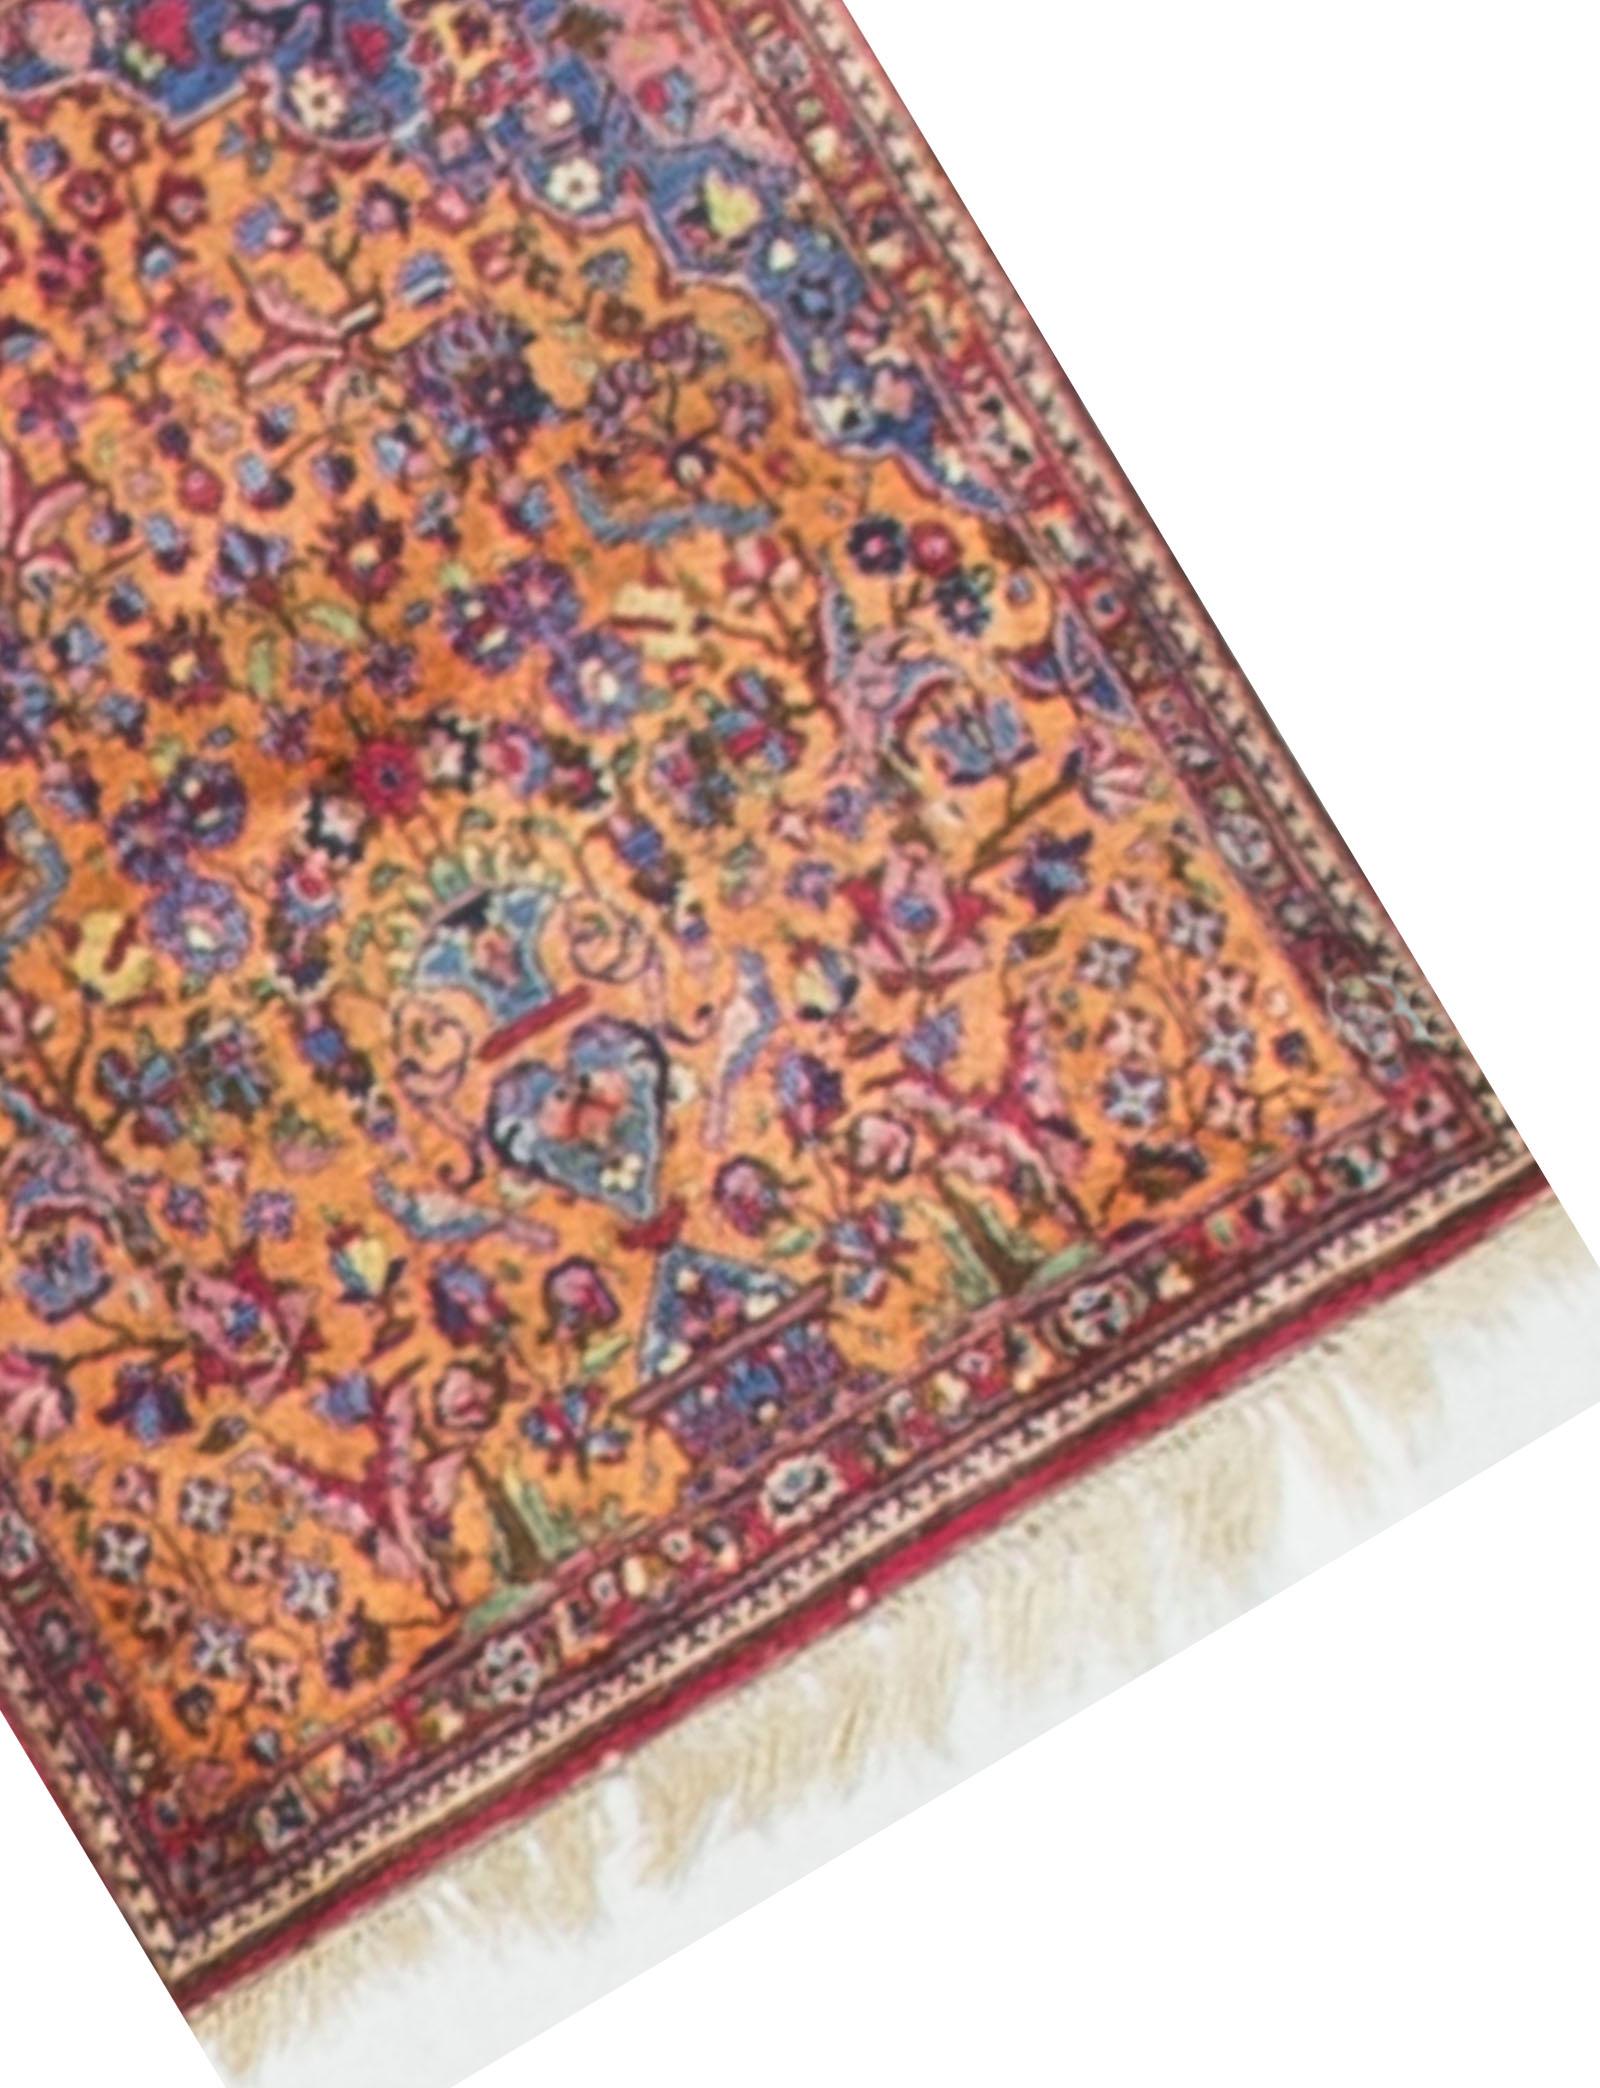 Vintage Persische Seide Tabriz, um 1940. Fein gewebt aus Seide passt dieser entzückende kleine Teppich in viele verschiedene Bereiche eines Hauses. Größe: 2' x 3'.
 